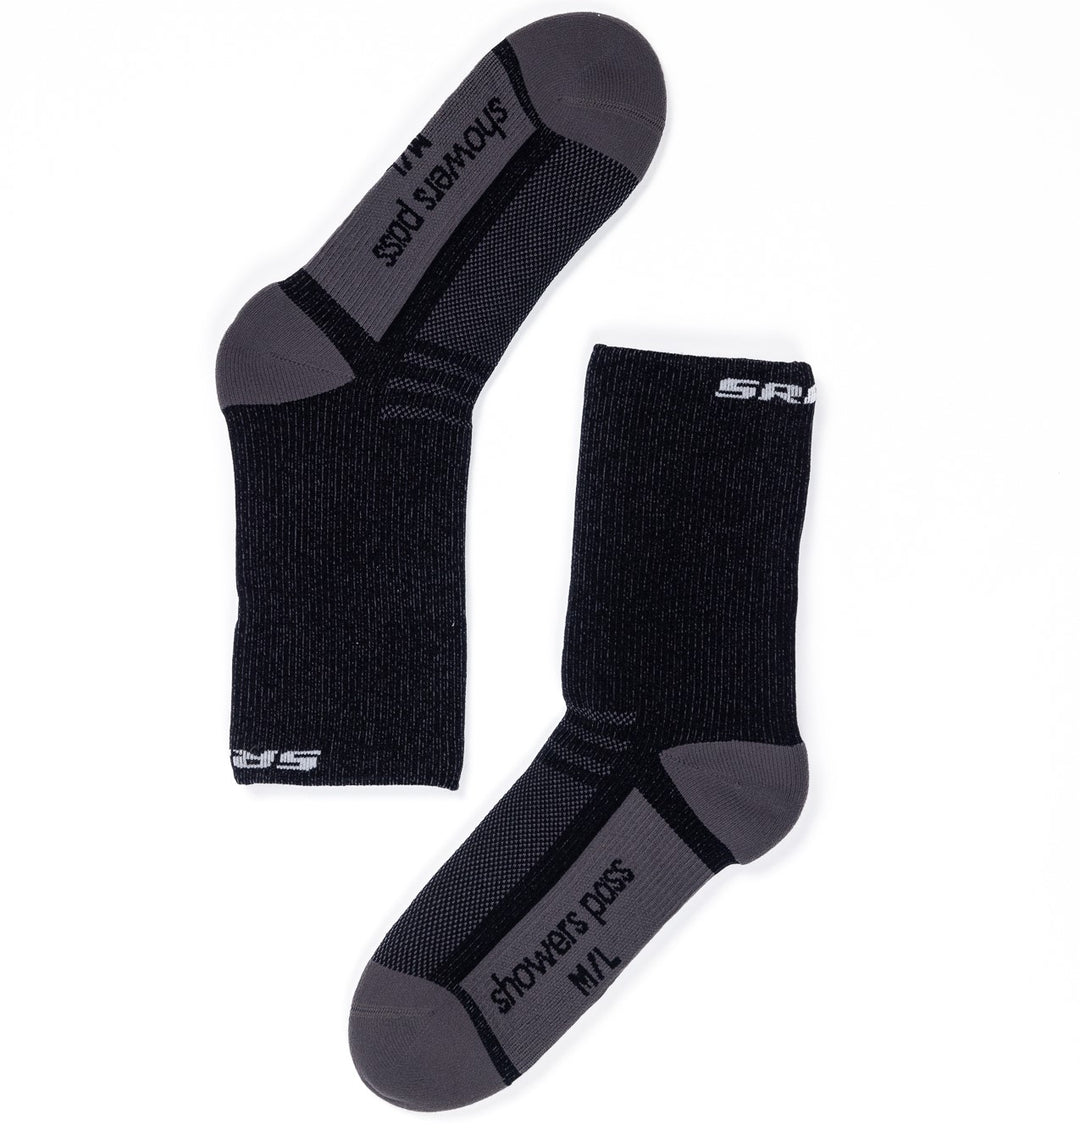 SRAM Showers Pass Crosspoint Waterproof socks